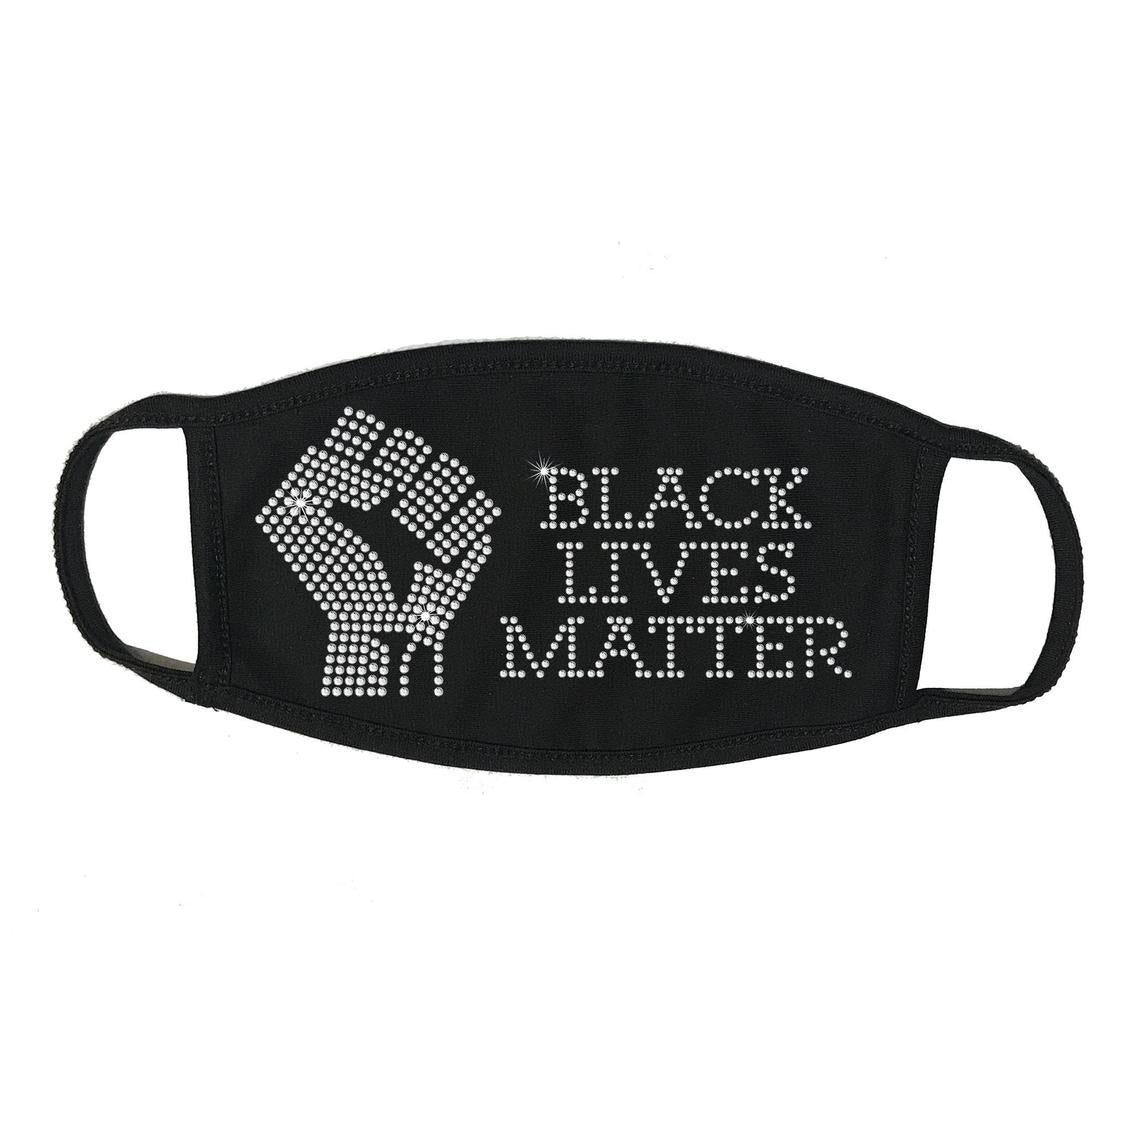 Rhinestone Embellished Black Face Mask with Black Lives Matter & Fist